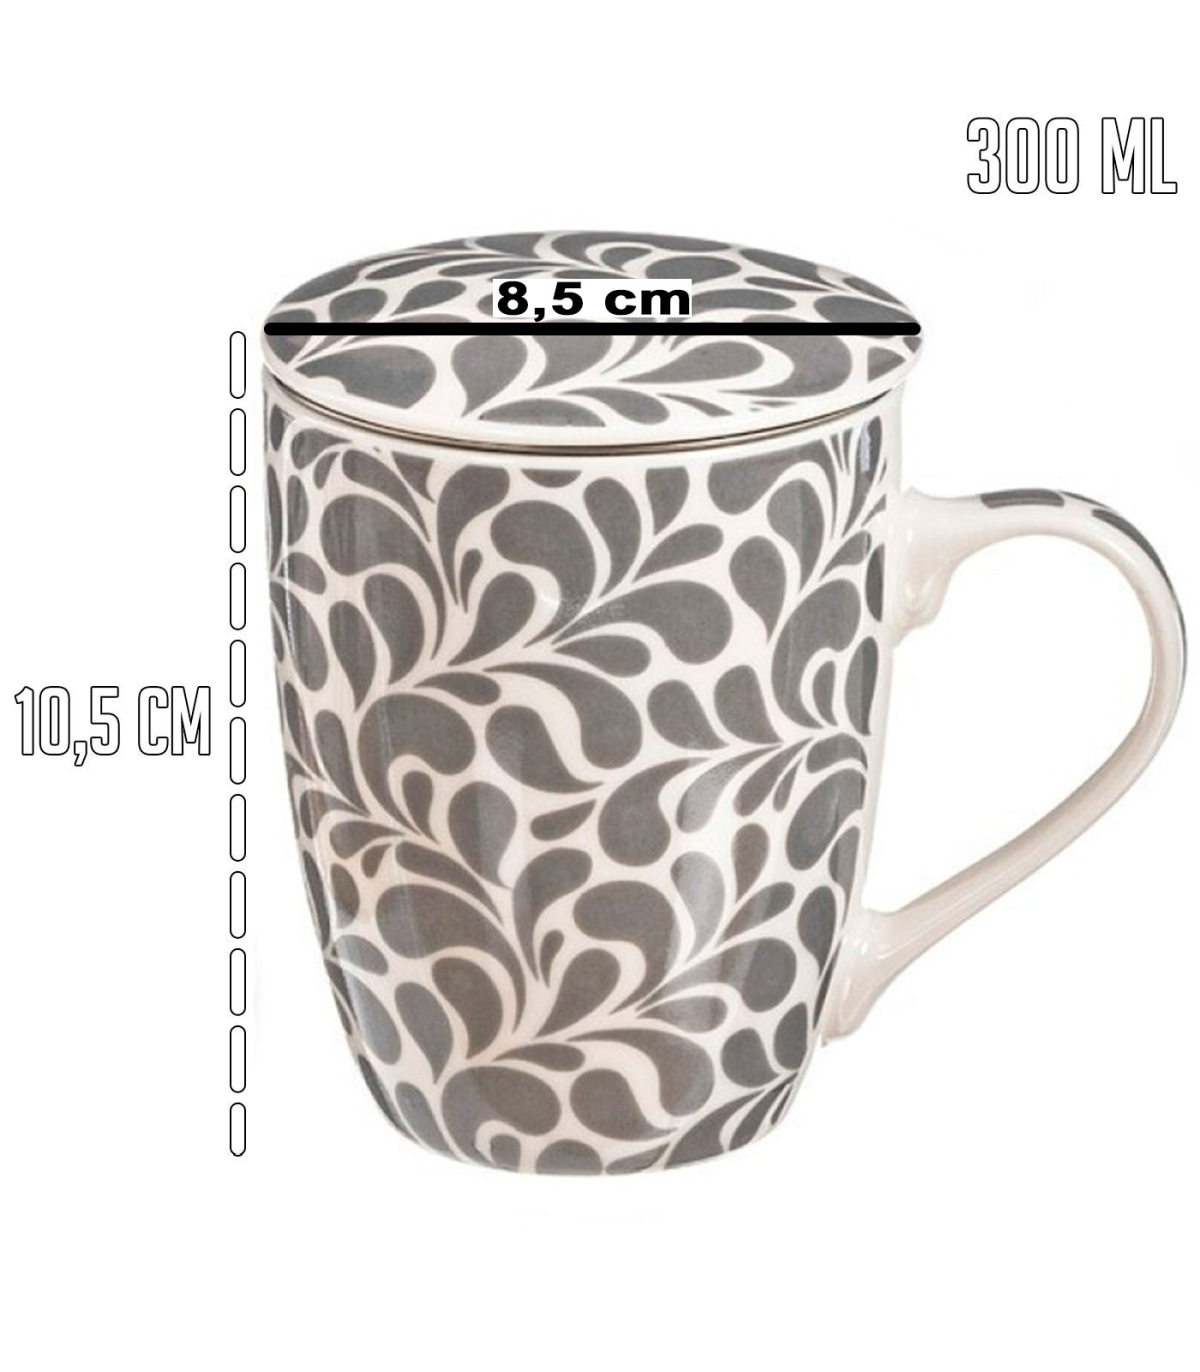 Tradineur - Taza para té, infusiones, incluye filtro y tapa, cerámica y  acero inoxidable, mantiene caliente la infusión, regalo